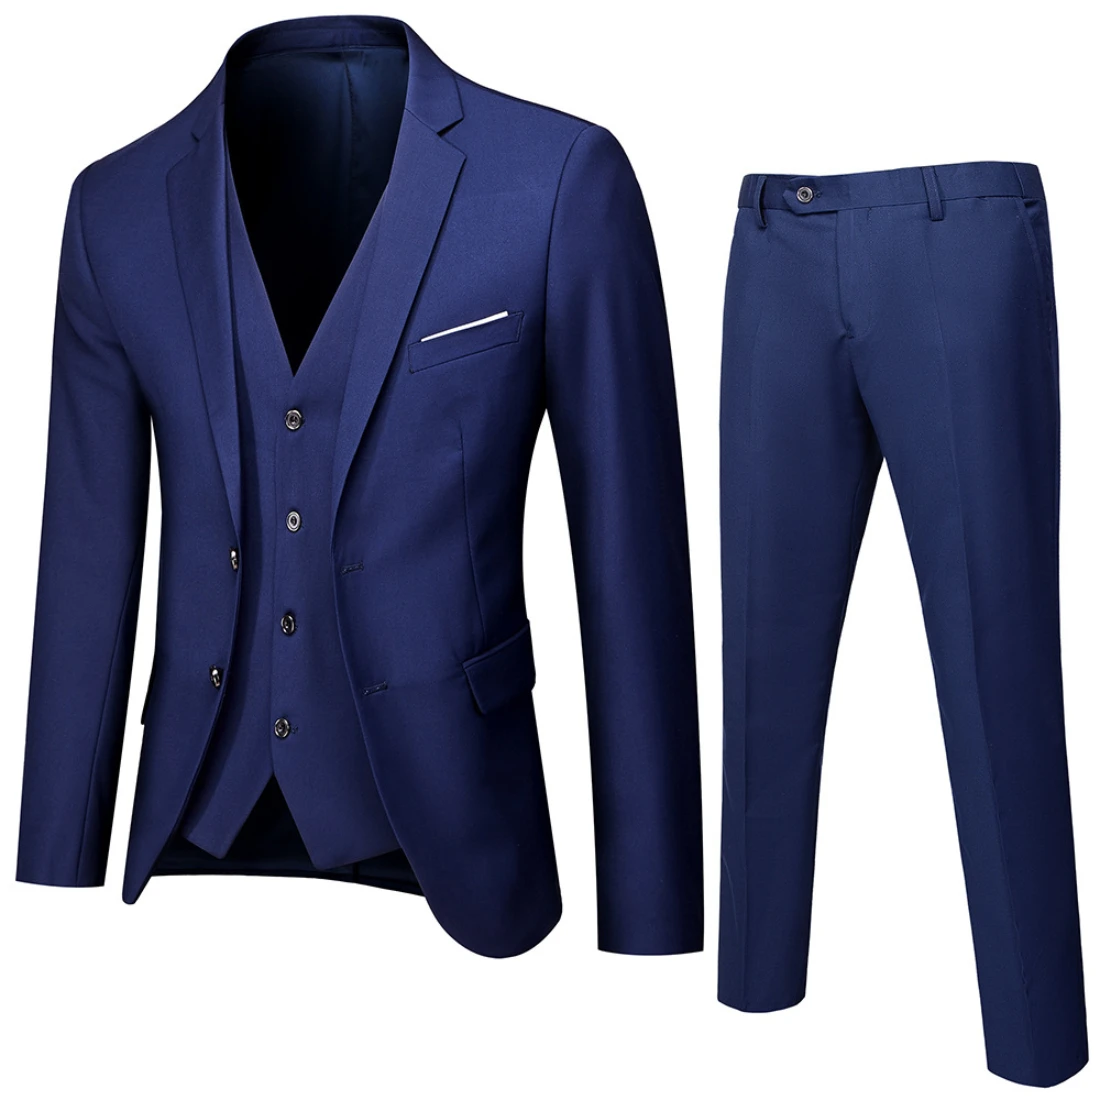 Tanie Men Brand Blazers 3 Pieces Sets Business Suits Vest Blue sklep